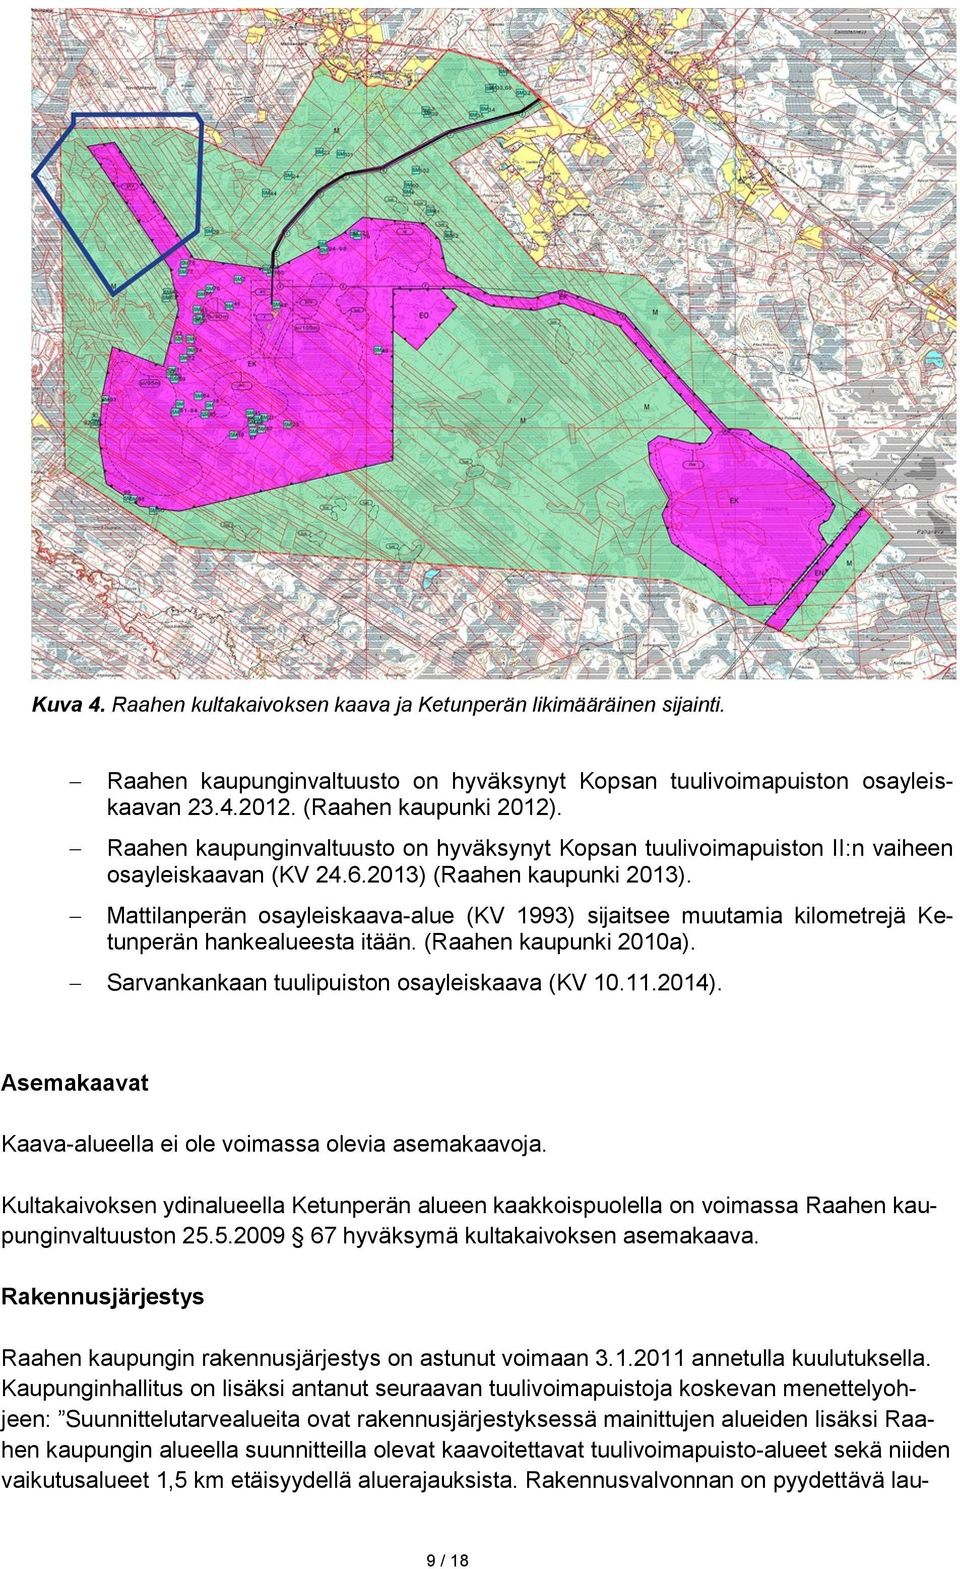 Mattilanperän osayleiskaava-alue (KV 1993) sijaitsee muutamia kilometrejä Ketunperän hankealueesta itään. (Raahen kaupunki 2010a). Sarvankankaan tuulipuiston osayleiskaava (KV 10.11.2014).